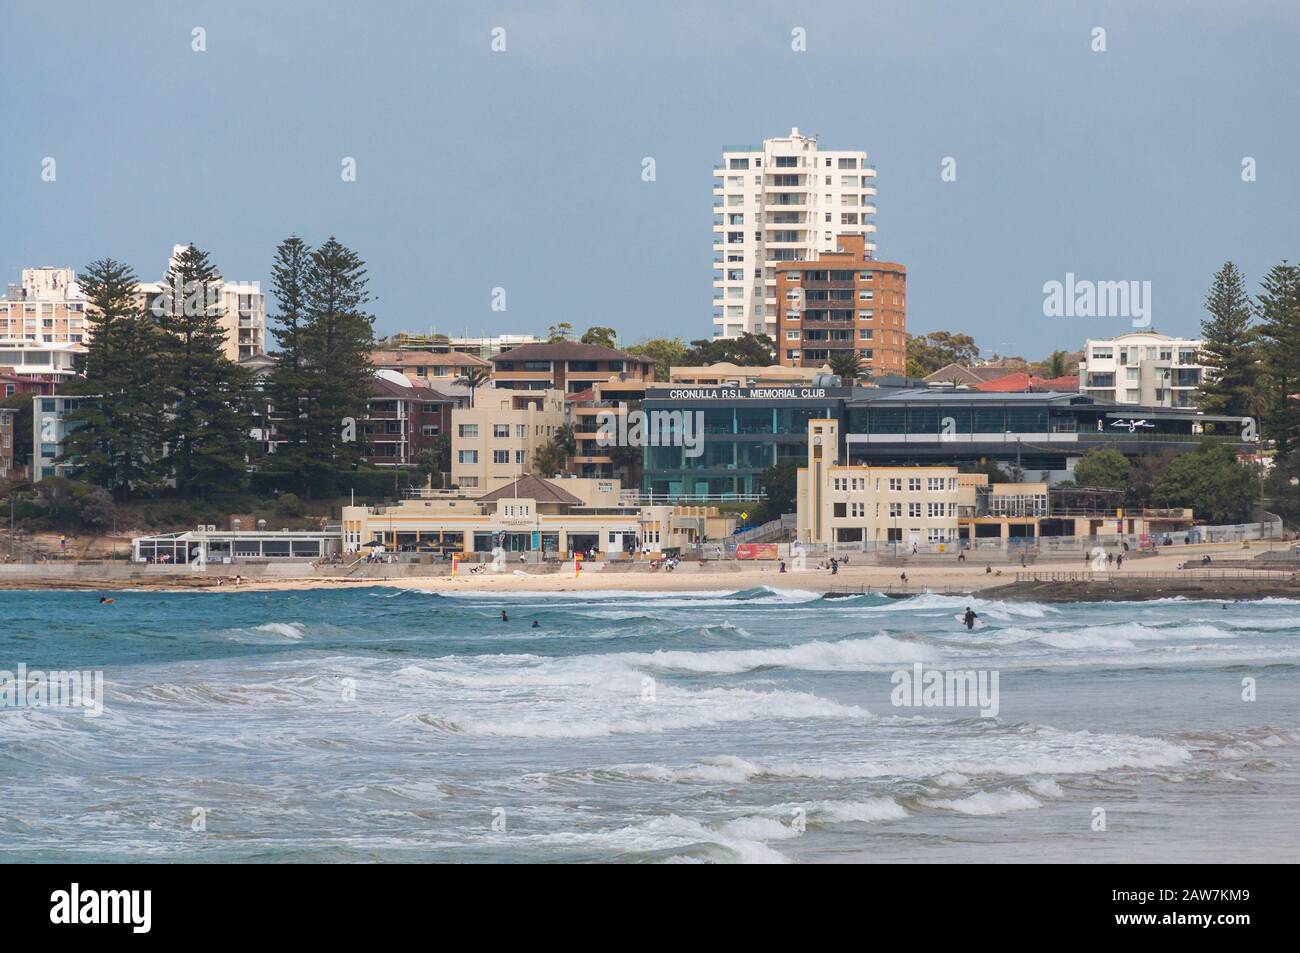 Sydney, Australia - October 22, 2018: Cronulla RSL Memorial club, cafes, bars, restaurants and Cronulla beach on sunny day Stock Photo